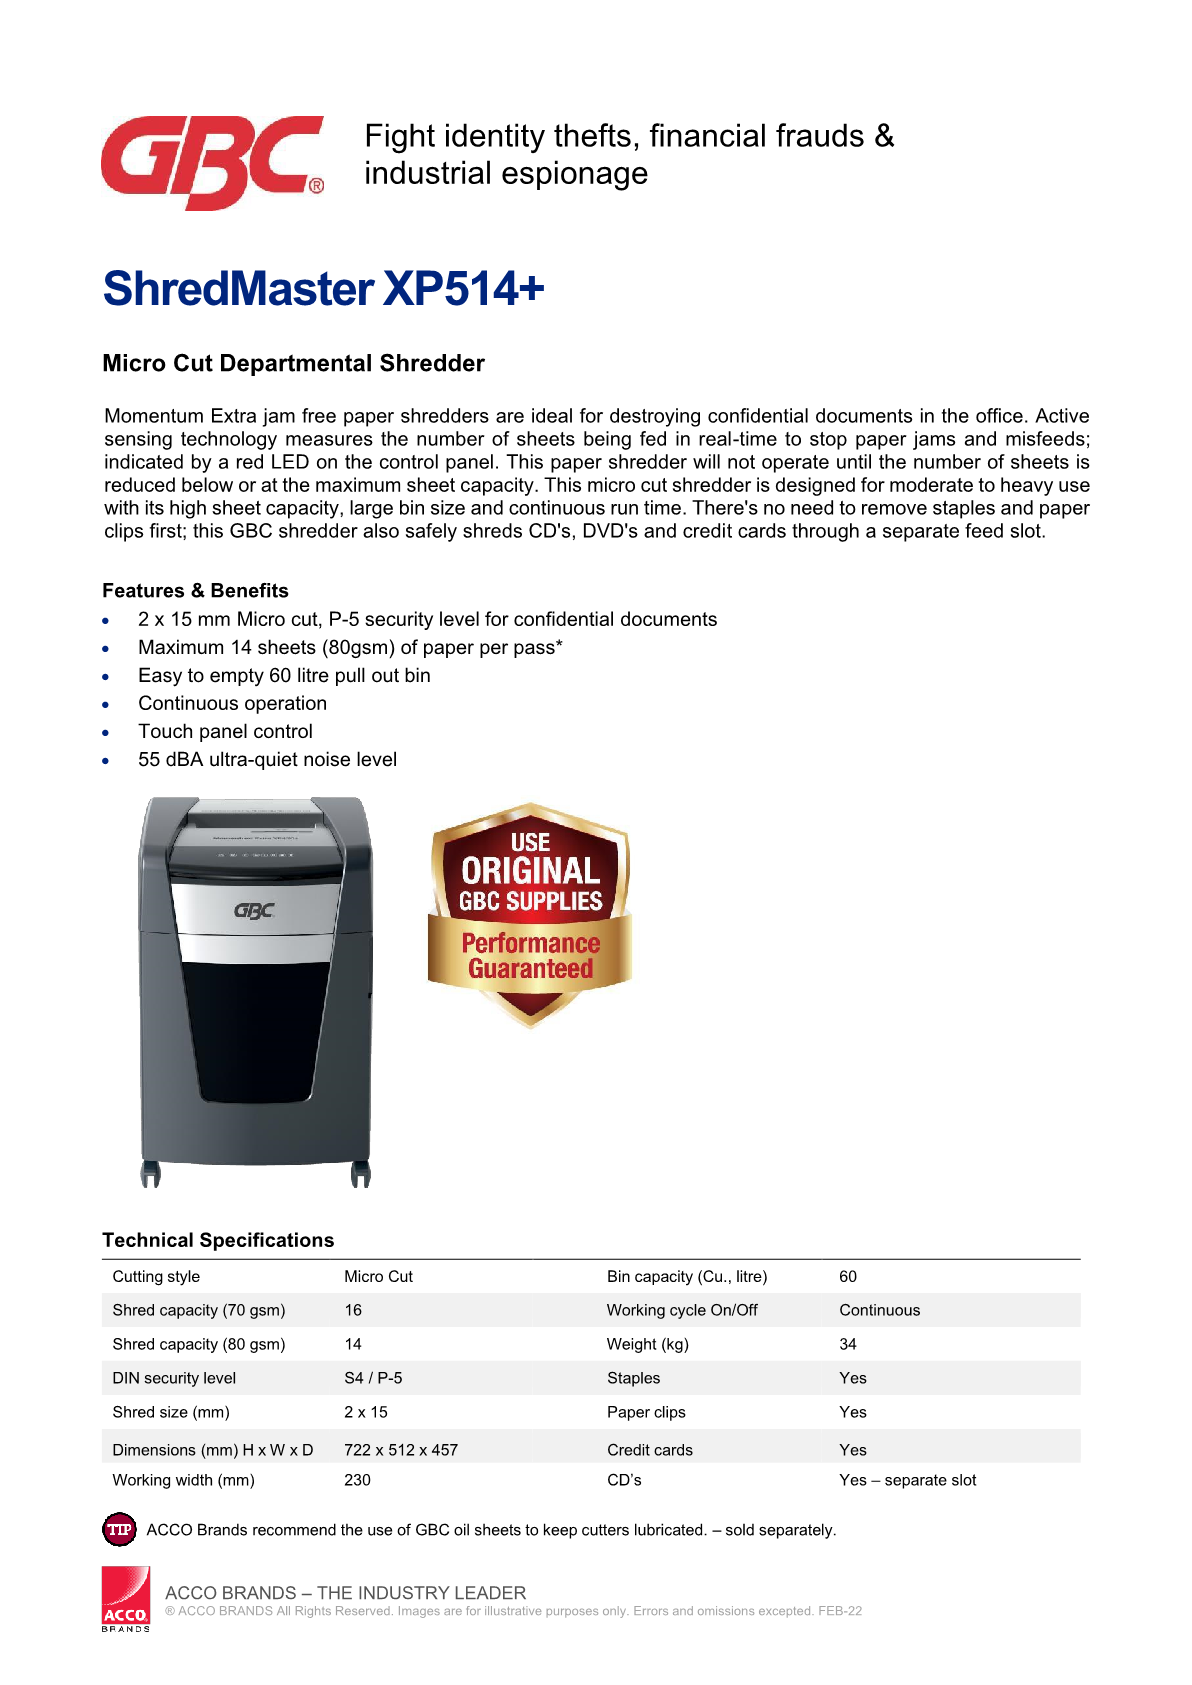 2022-datasheet-shredmaster-xp514-r1.png